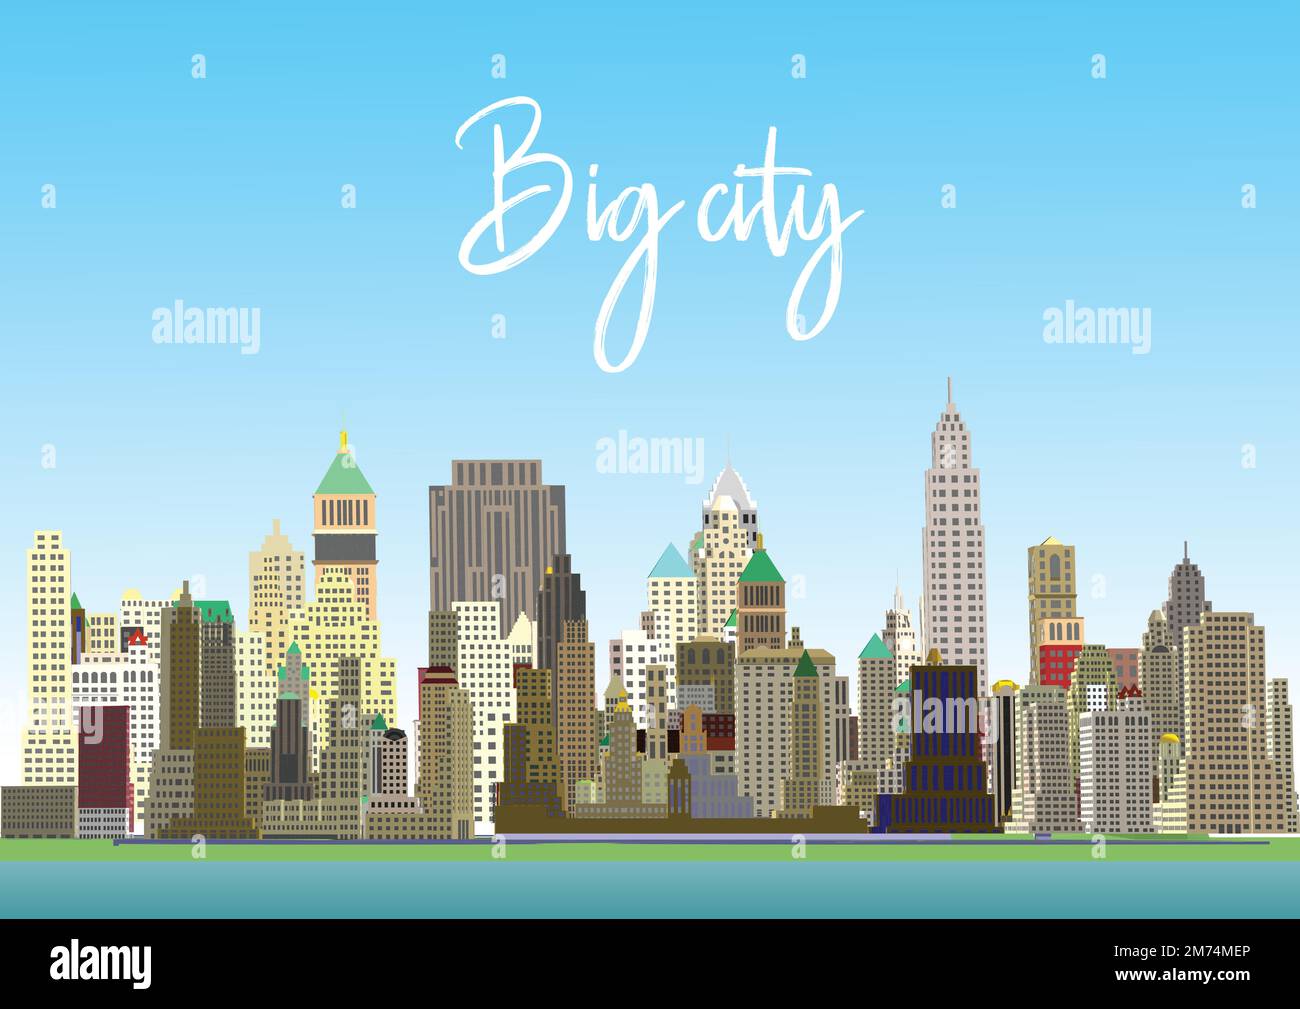 Illustration vectorielle New York CityScape. Caricature des monuments de New York la nuit, Freedom Tower sur One World Trade Center, et célèbre buil de la ville américaine Illustration de Vecteur